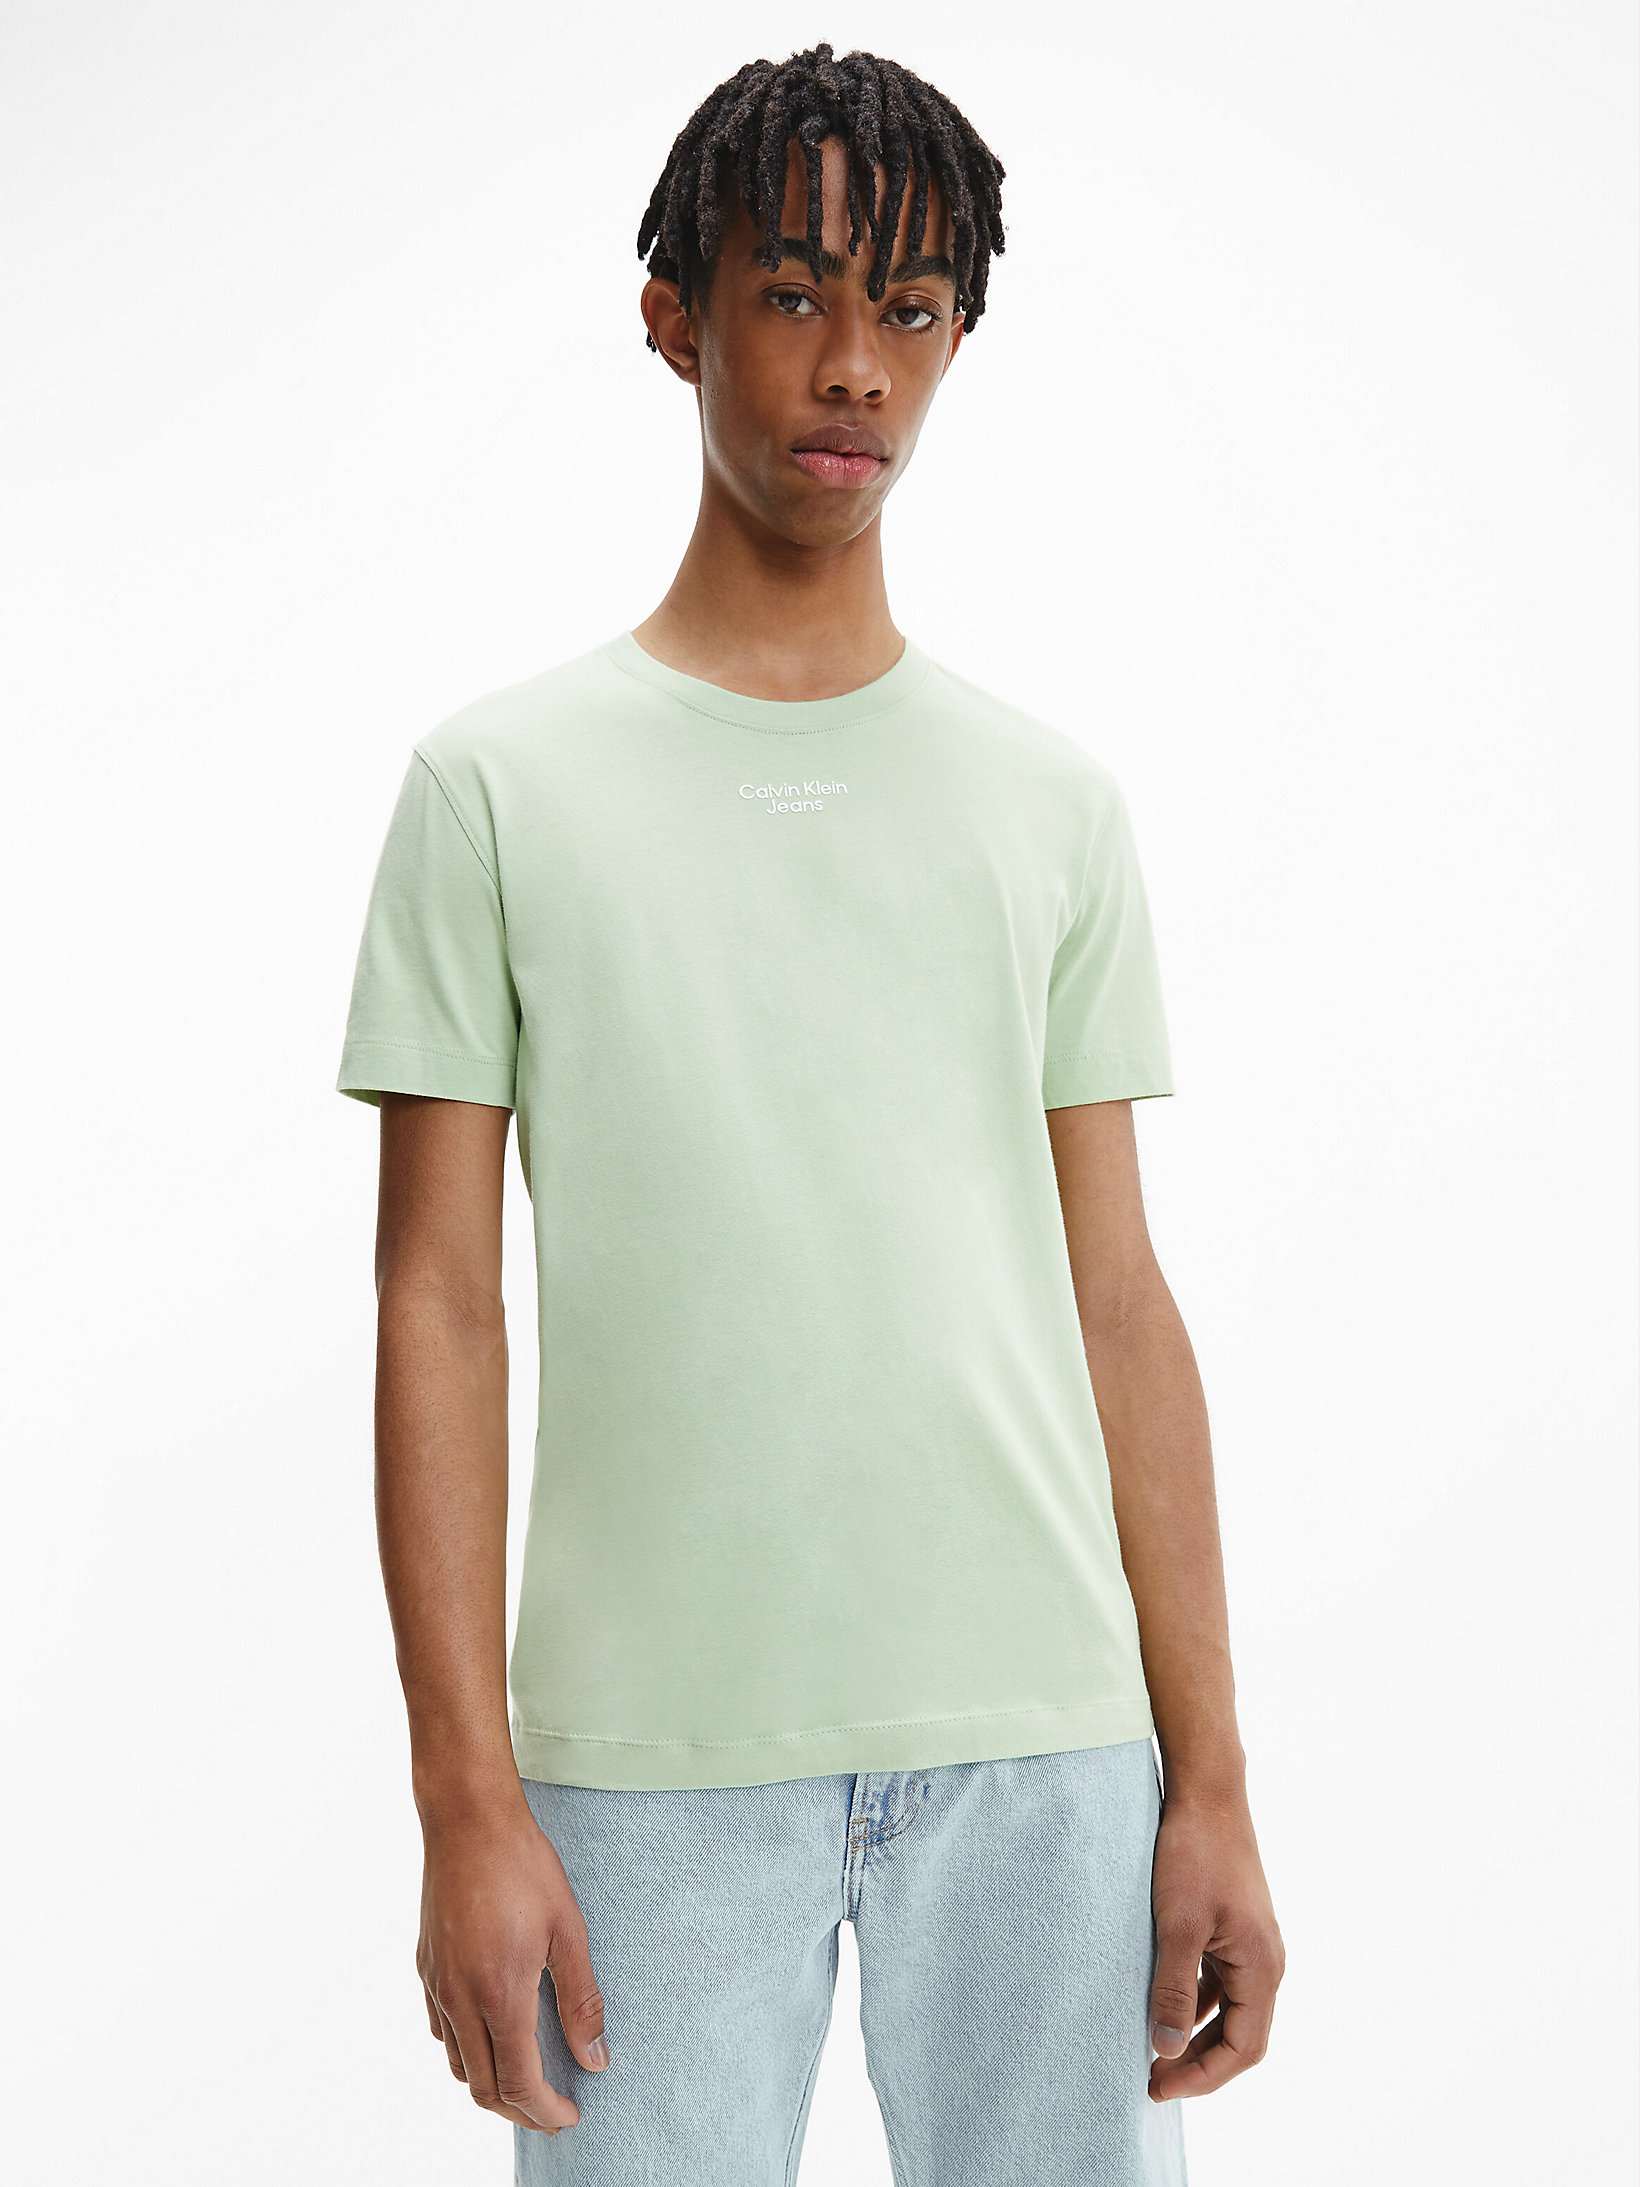 Jaded Green Slim Organic Cotton T-Shirt undefined men Calvin Klein